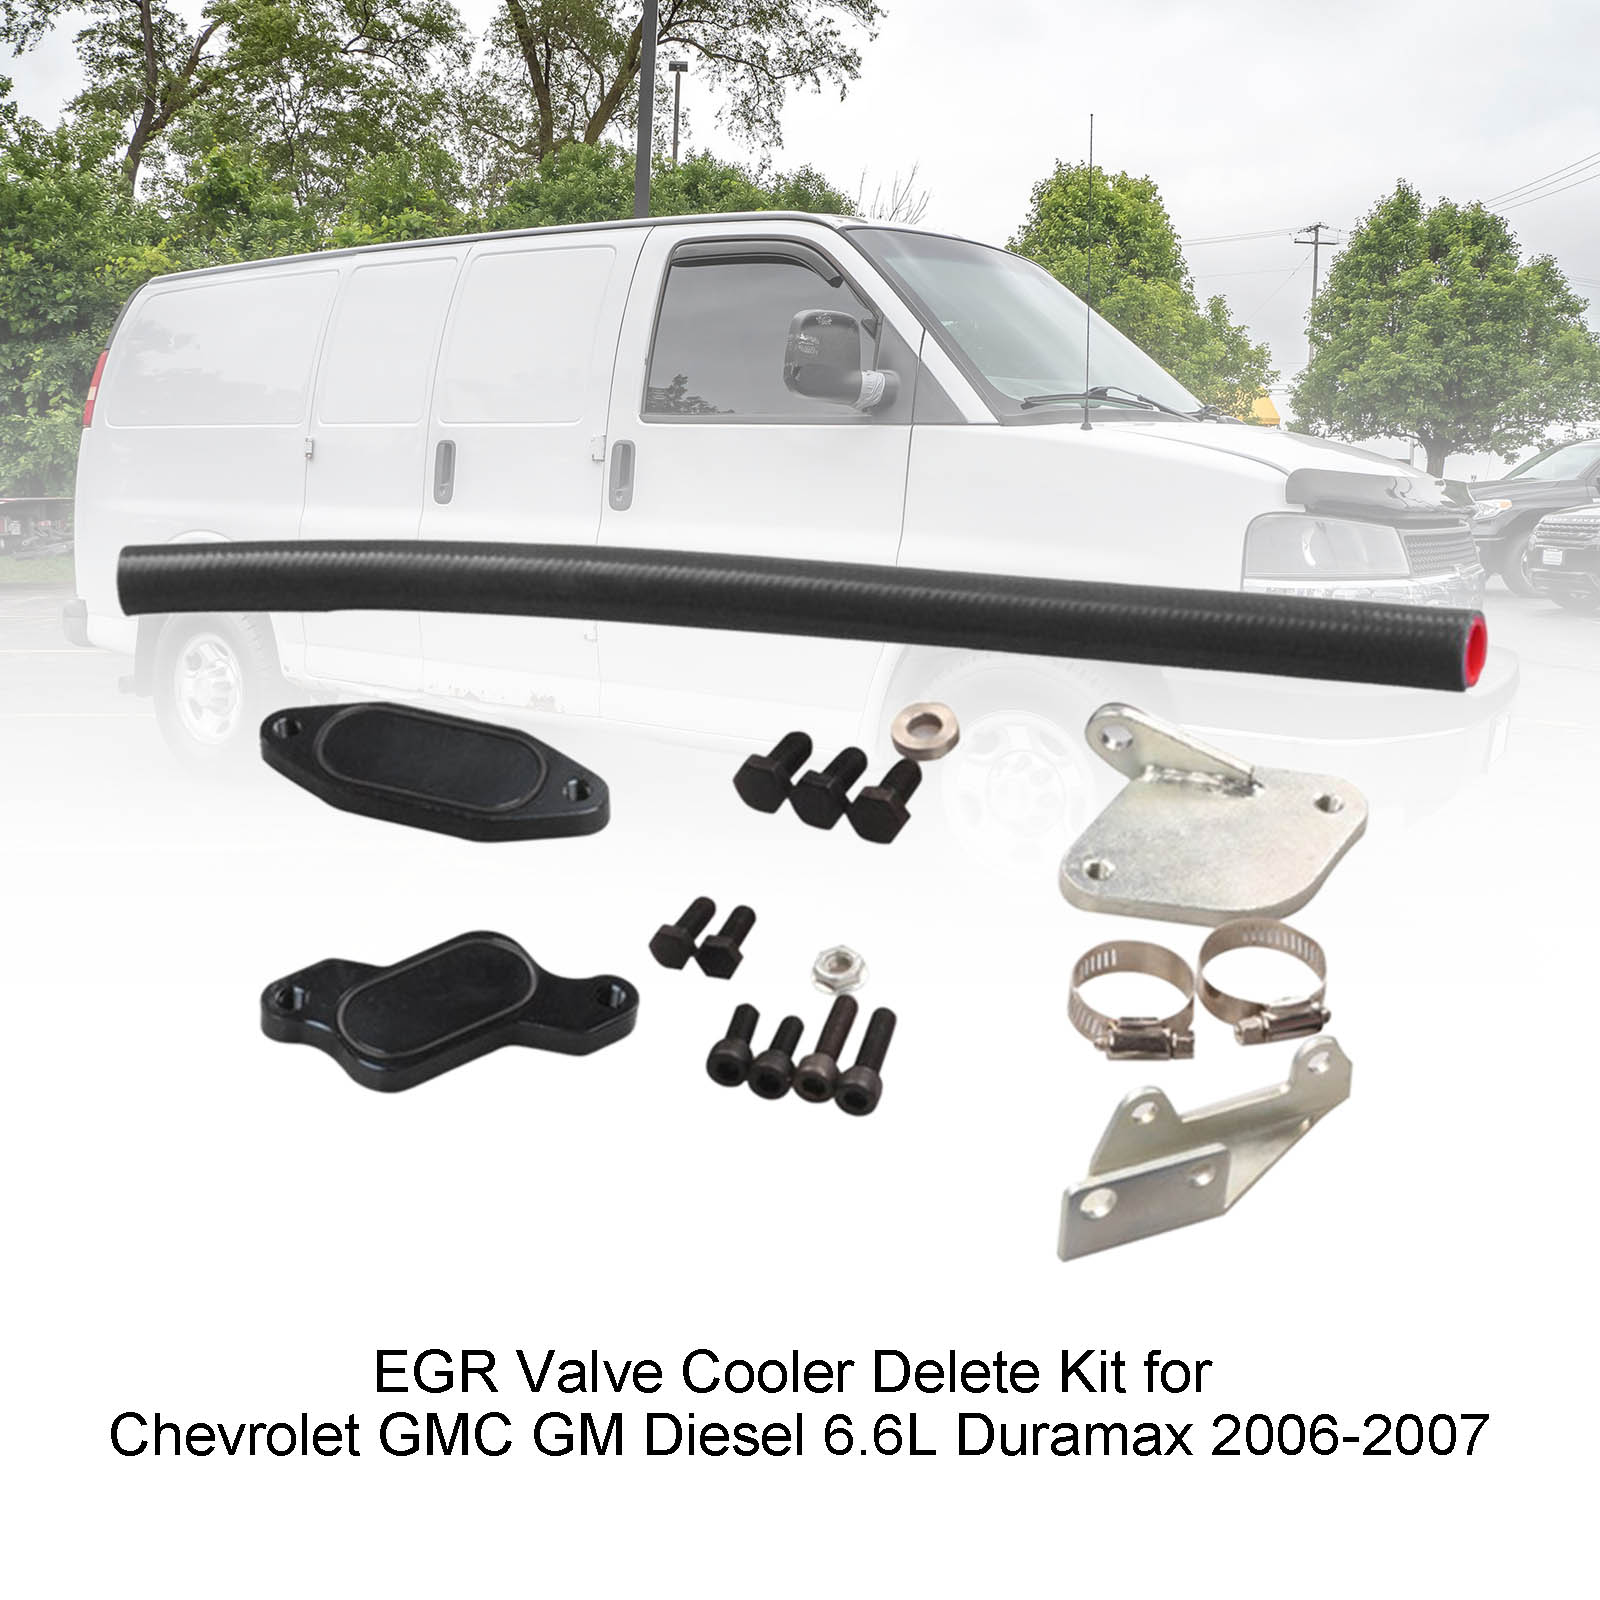 Chevrolet 2006-2007 GMC GM Diesel 6.6L Duramax EGR Valve Cooler Delete Kit